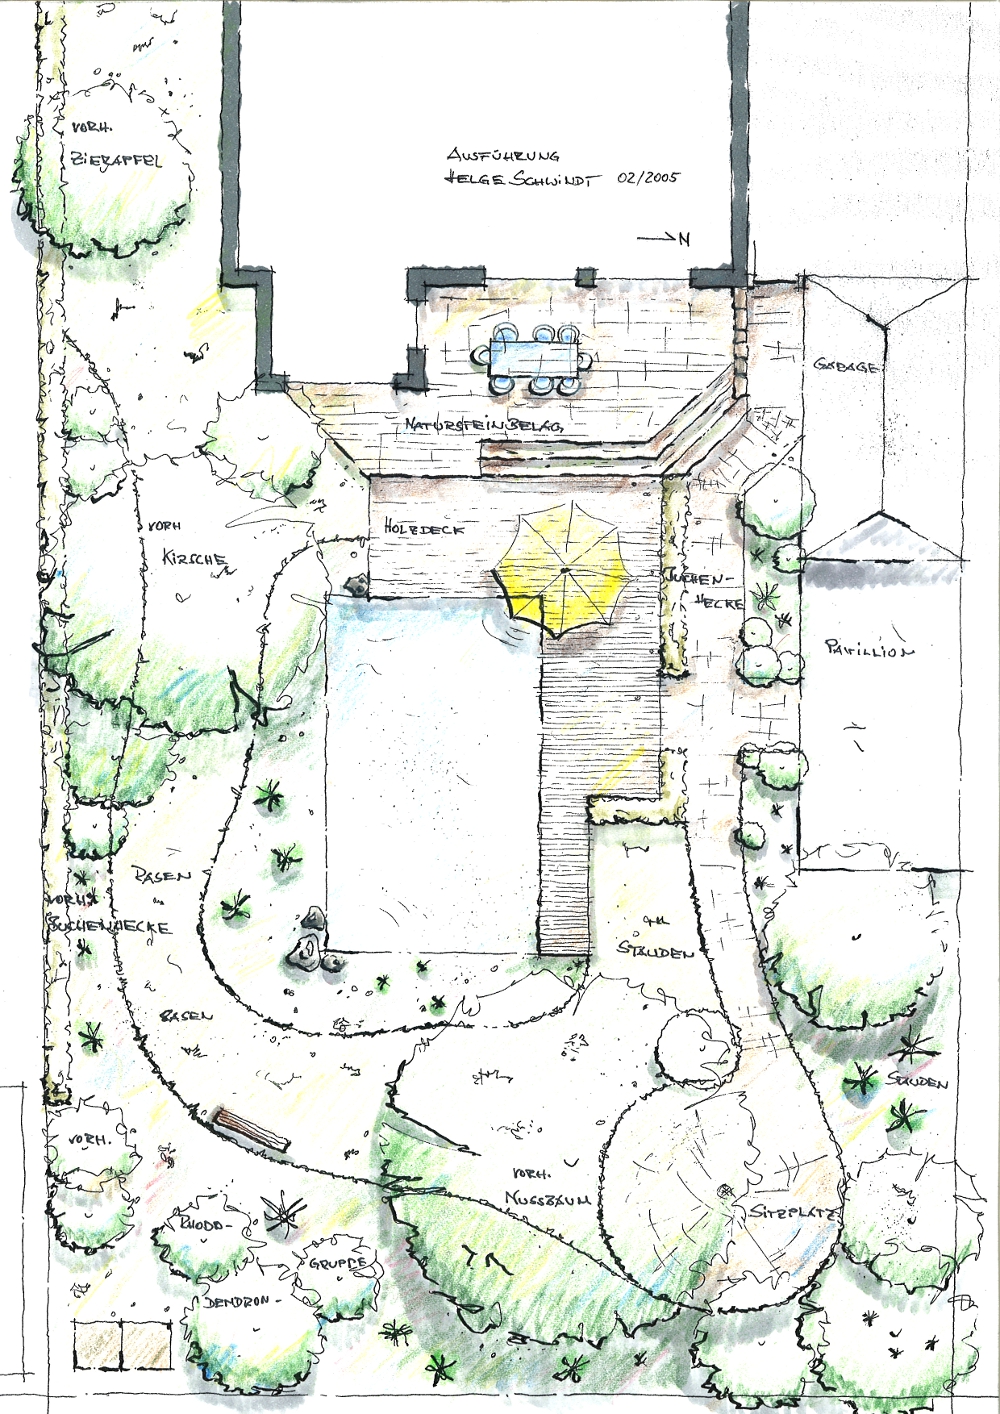 Gartenplanung: Badeteich mit Holzdeck. Terrasse mit Naturstein-Platten